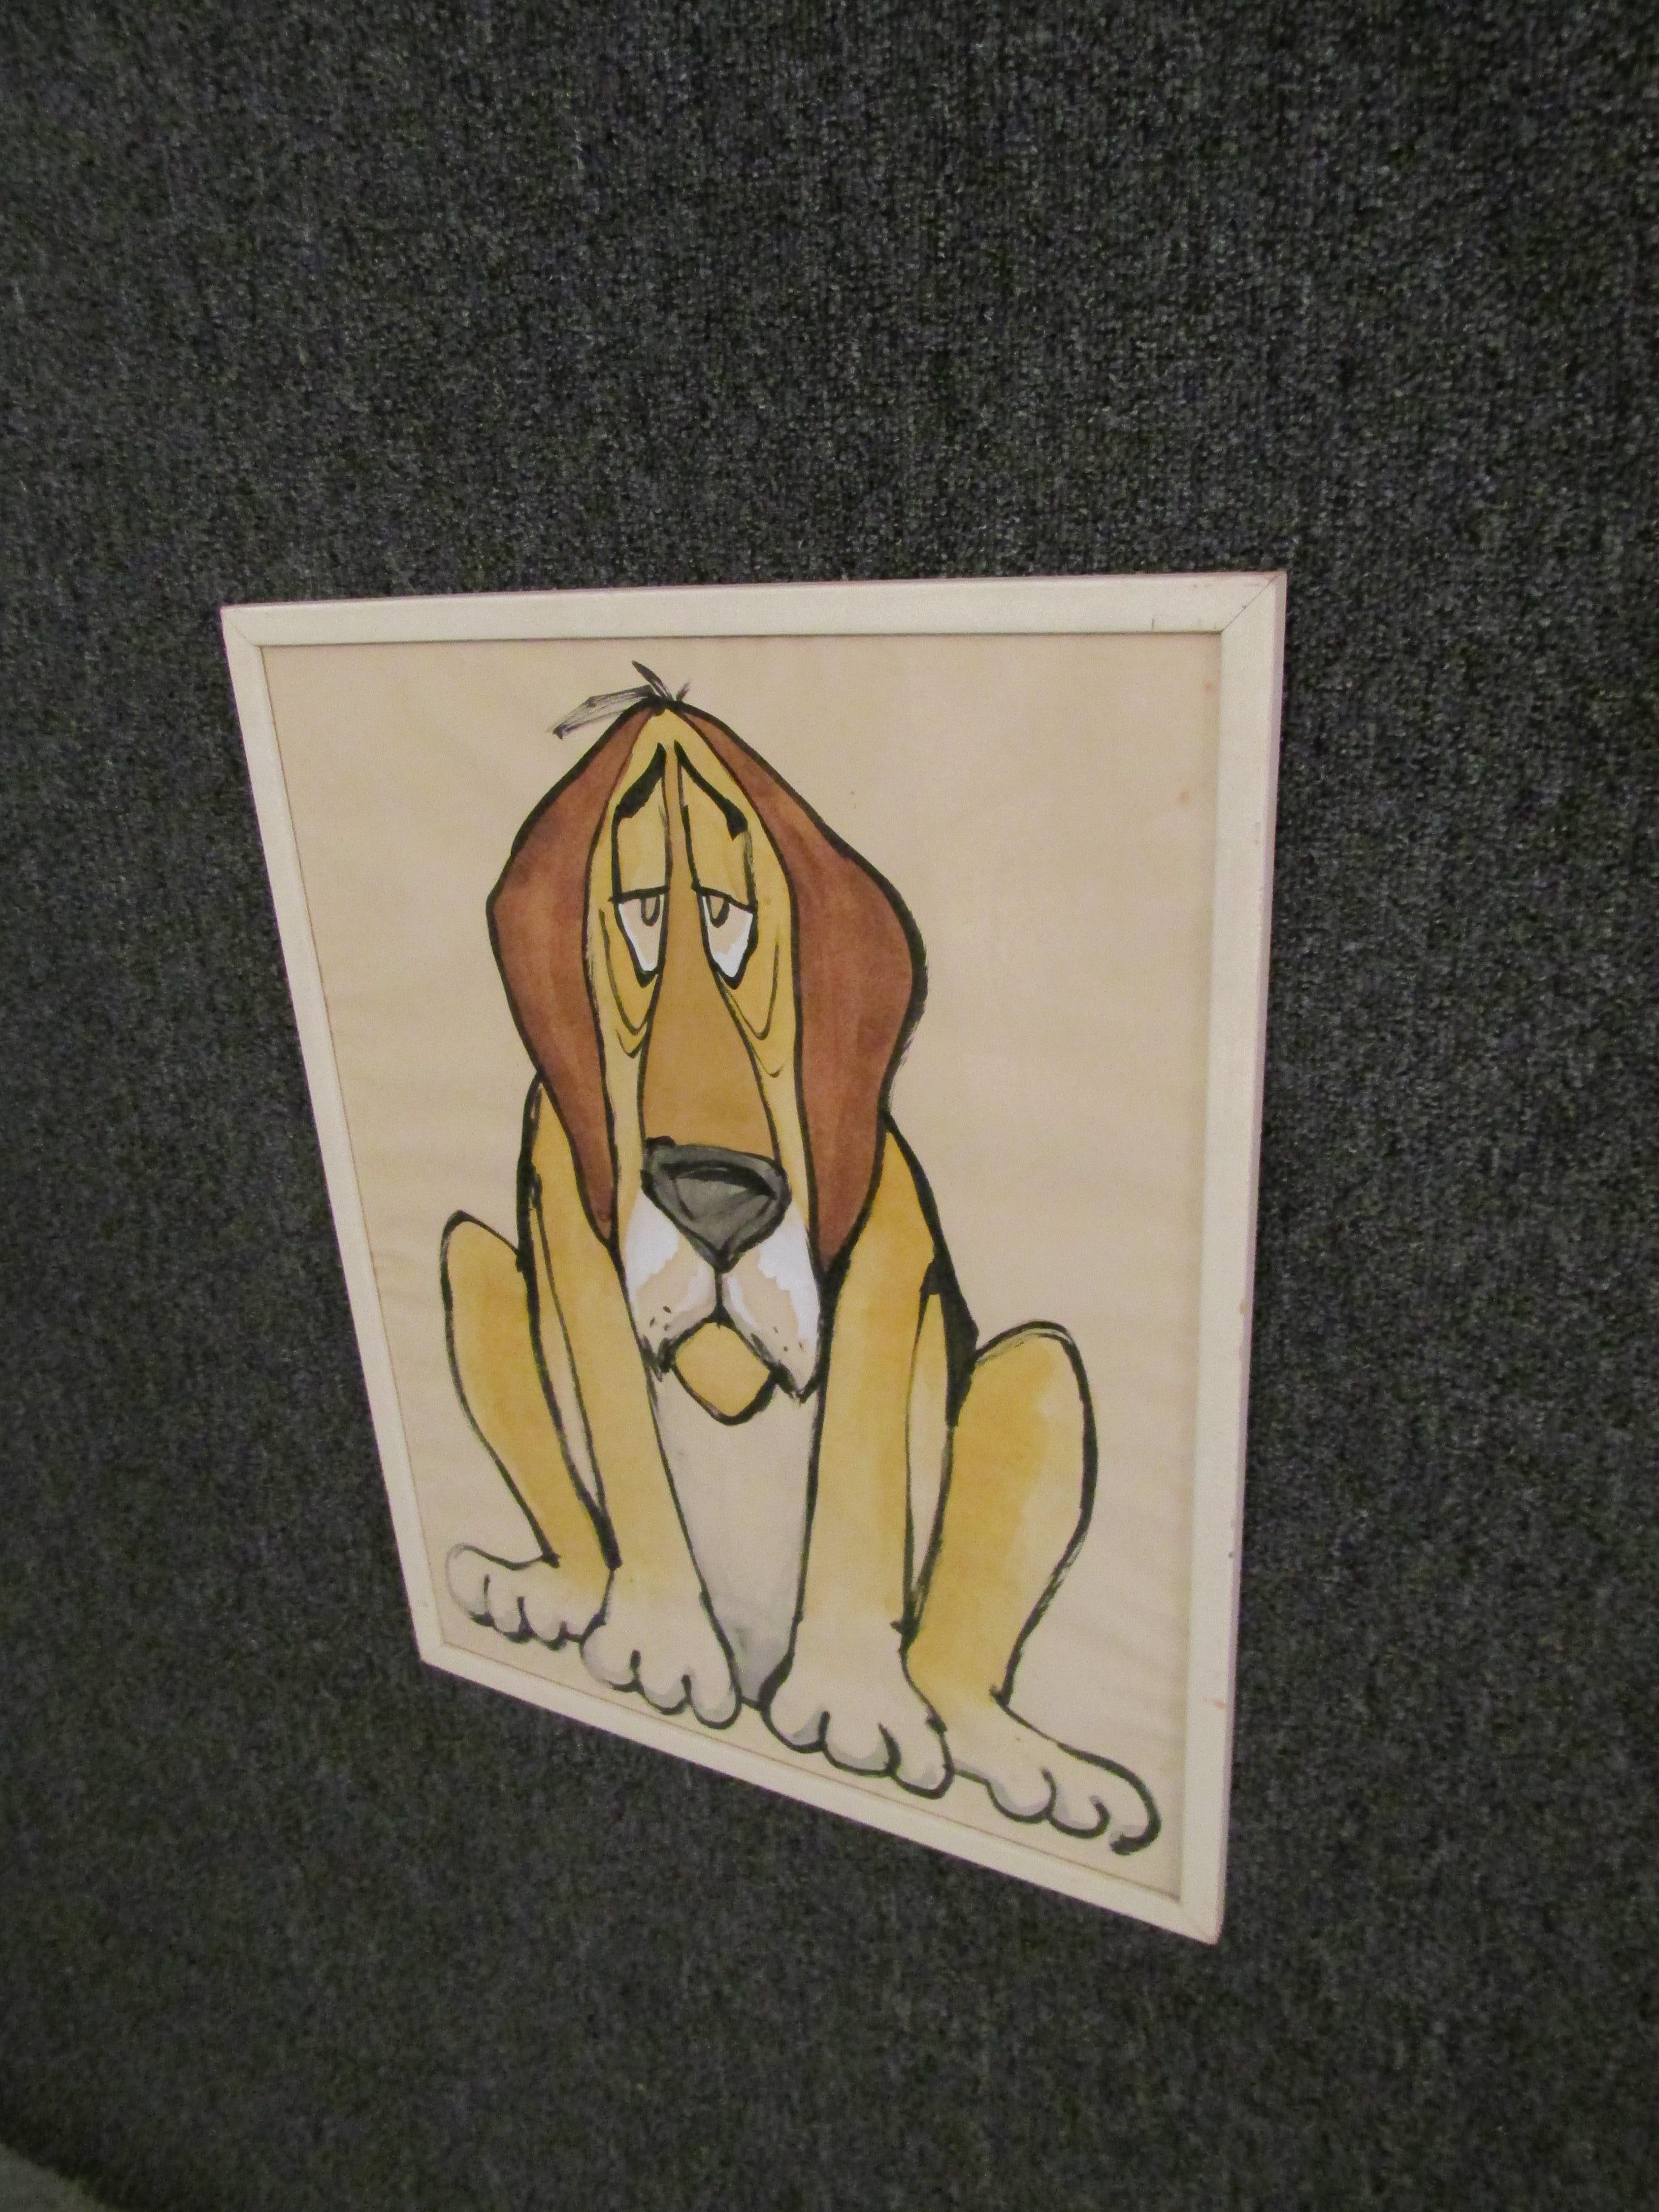 Dieses wunderbare Vintage-Aquarell eines Cartoon-Hundes verleiht jedem Raum einen Hauch von Spaß und Farbe. Dieser Welpe hat einen wunderbaren Ausdruck, der in jedem Retro-Dekor für Gesprächsstoff sorgen wird. Bitte bestätigen Sie die Abholung des